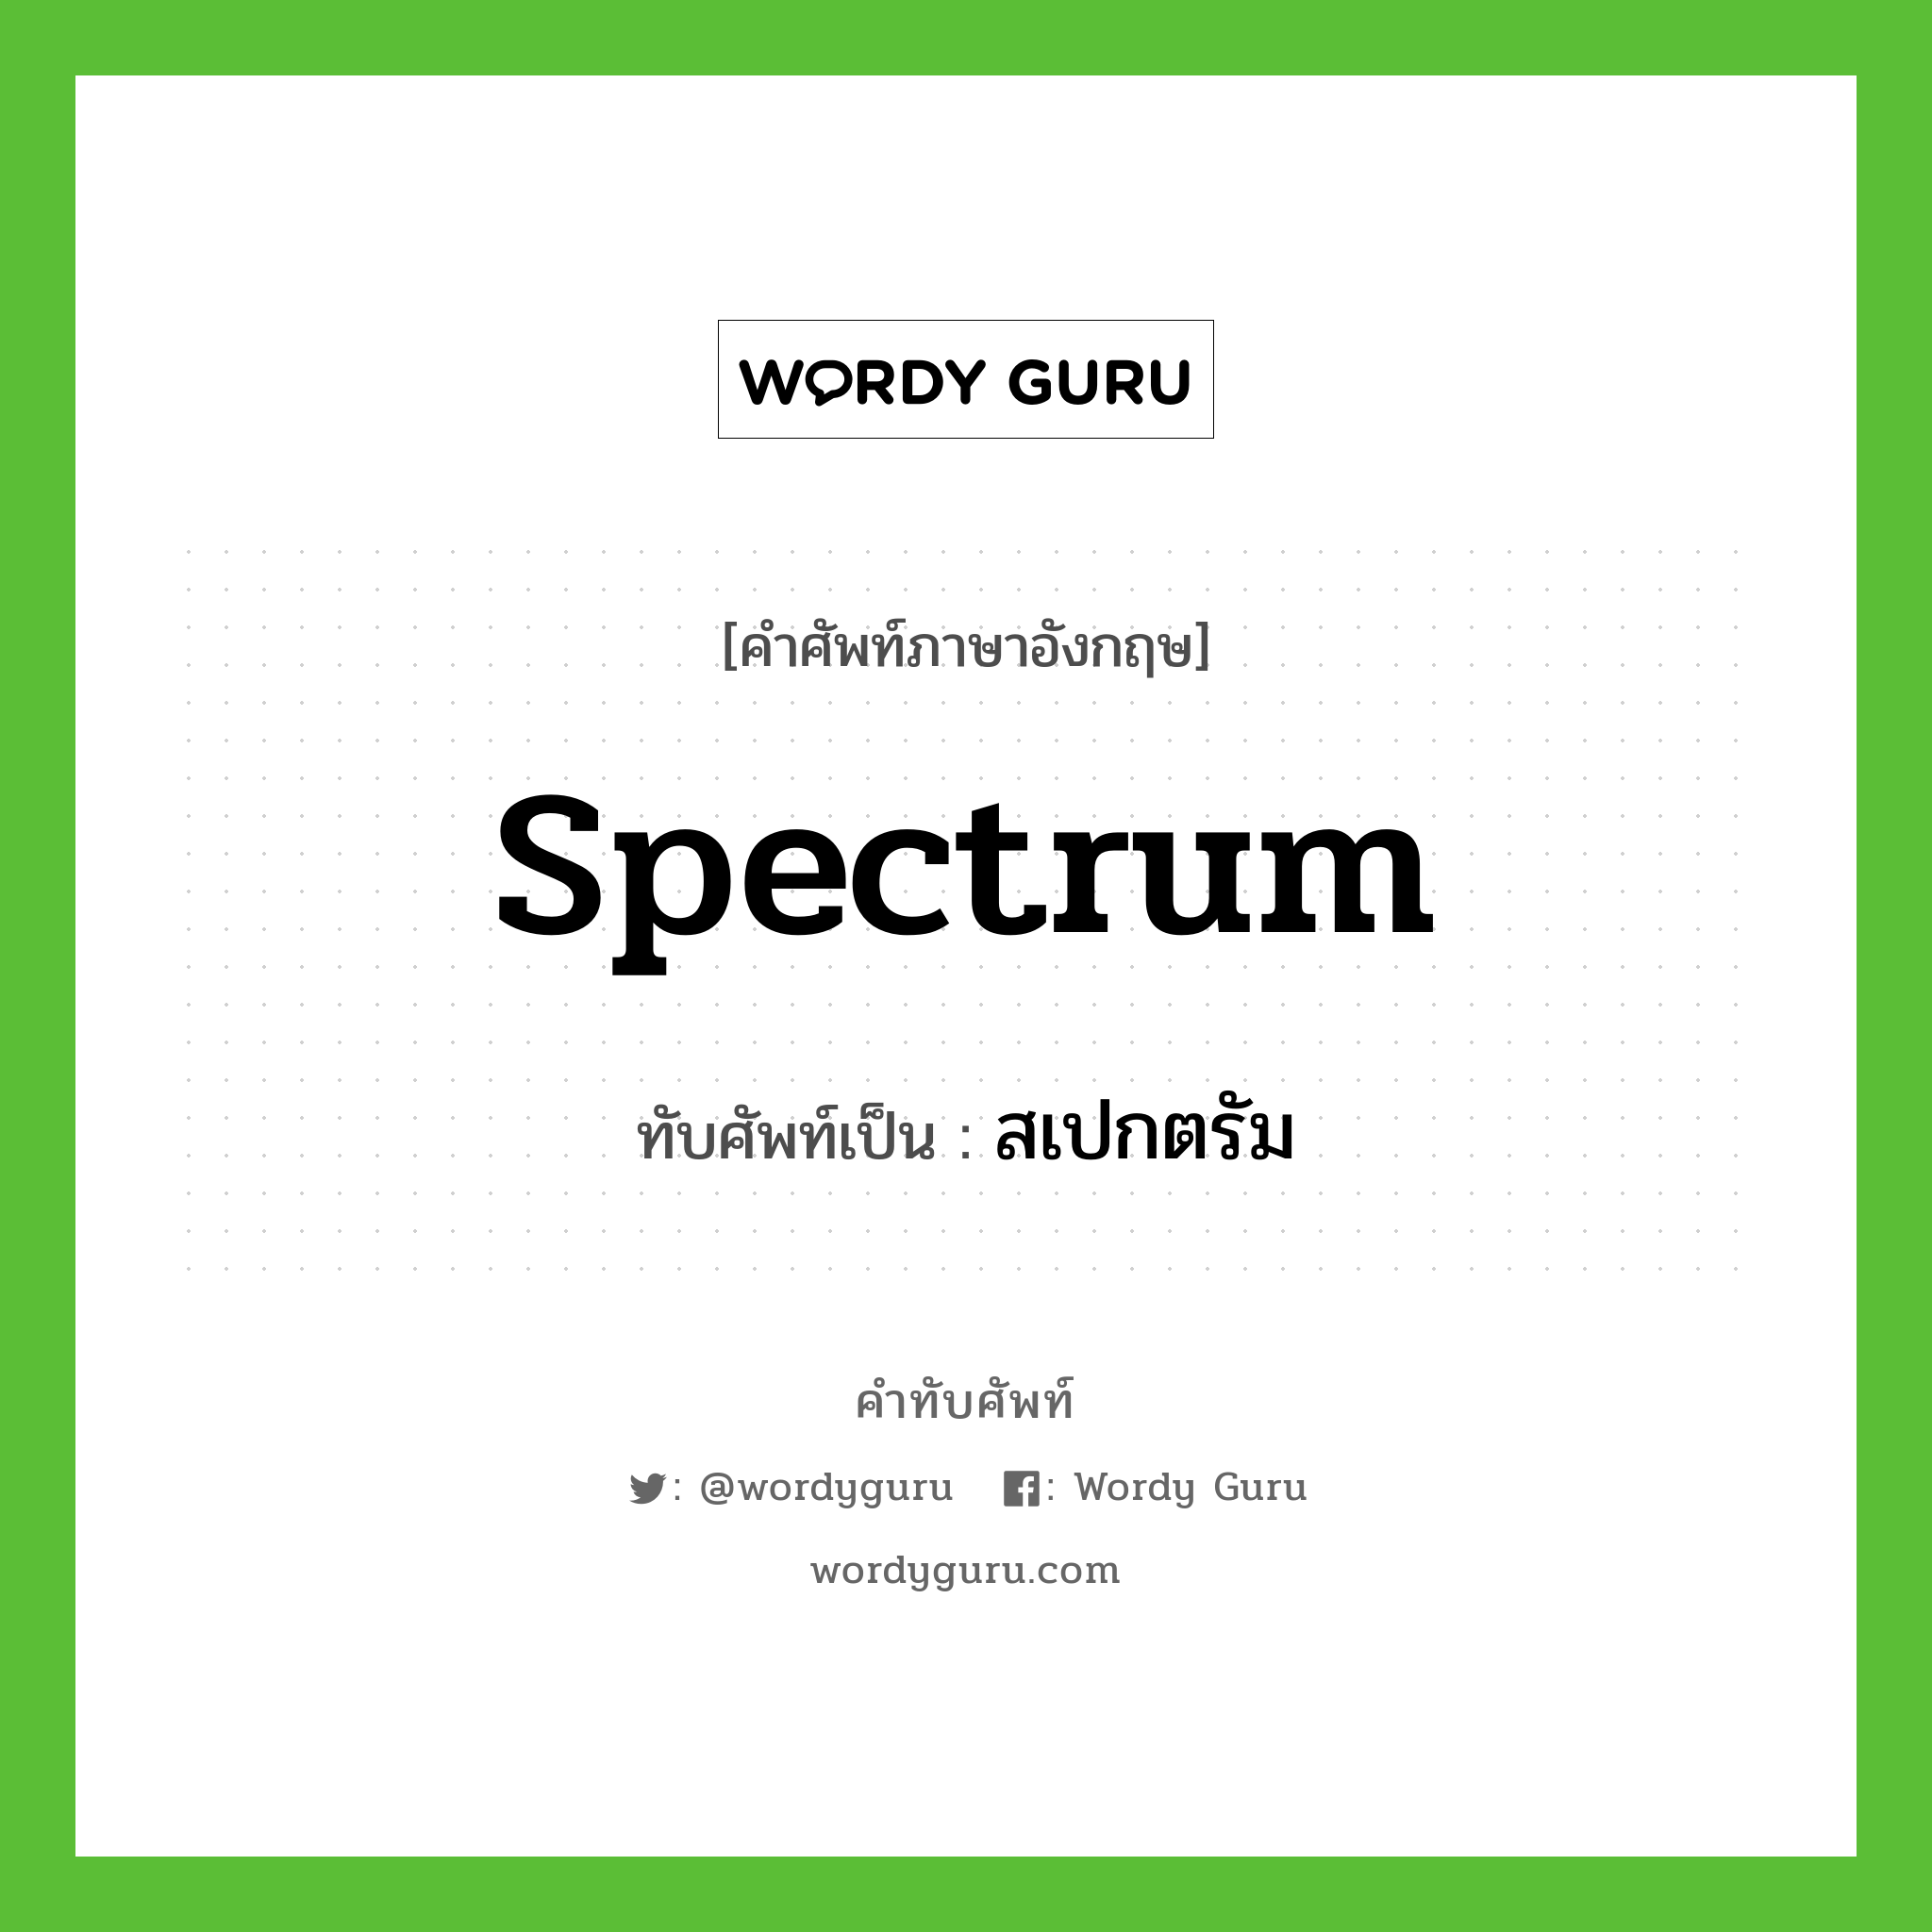 spectrum เขียนเป็นคำไทยว่าอะไร?, คำศัพท์ภาษาอังกฤษ spectrum ทับศัพท์เป็น สเปกตรัม